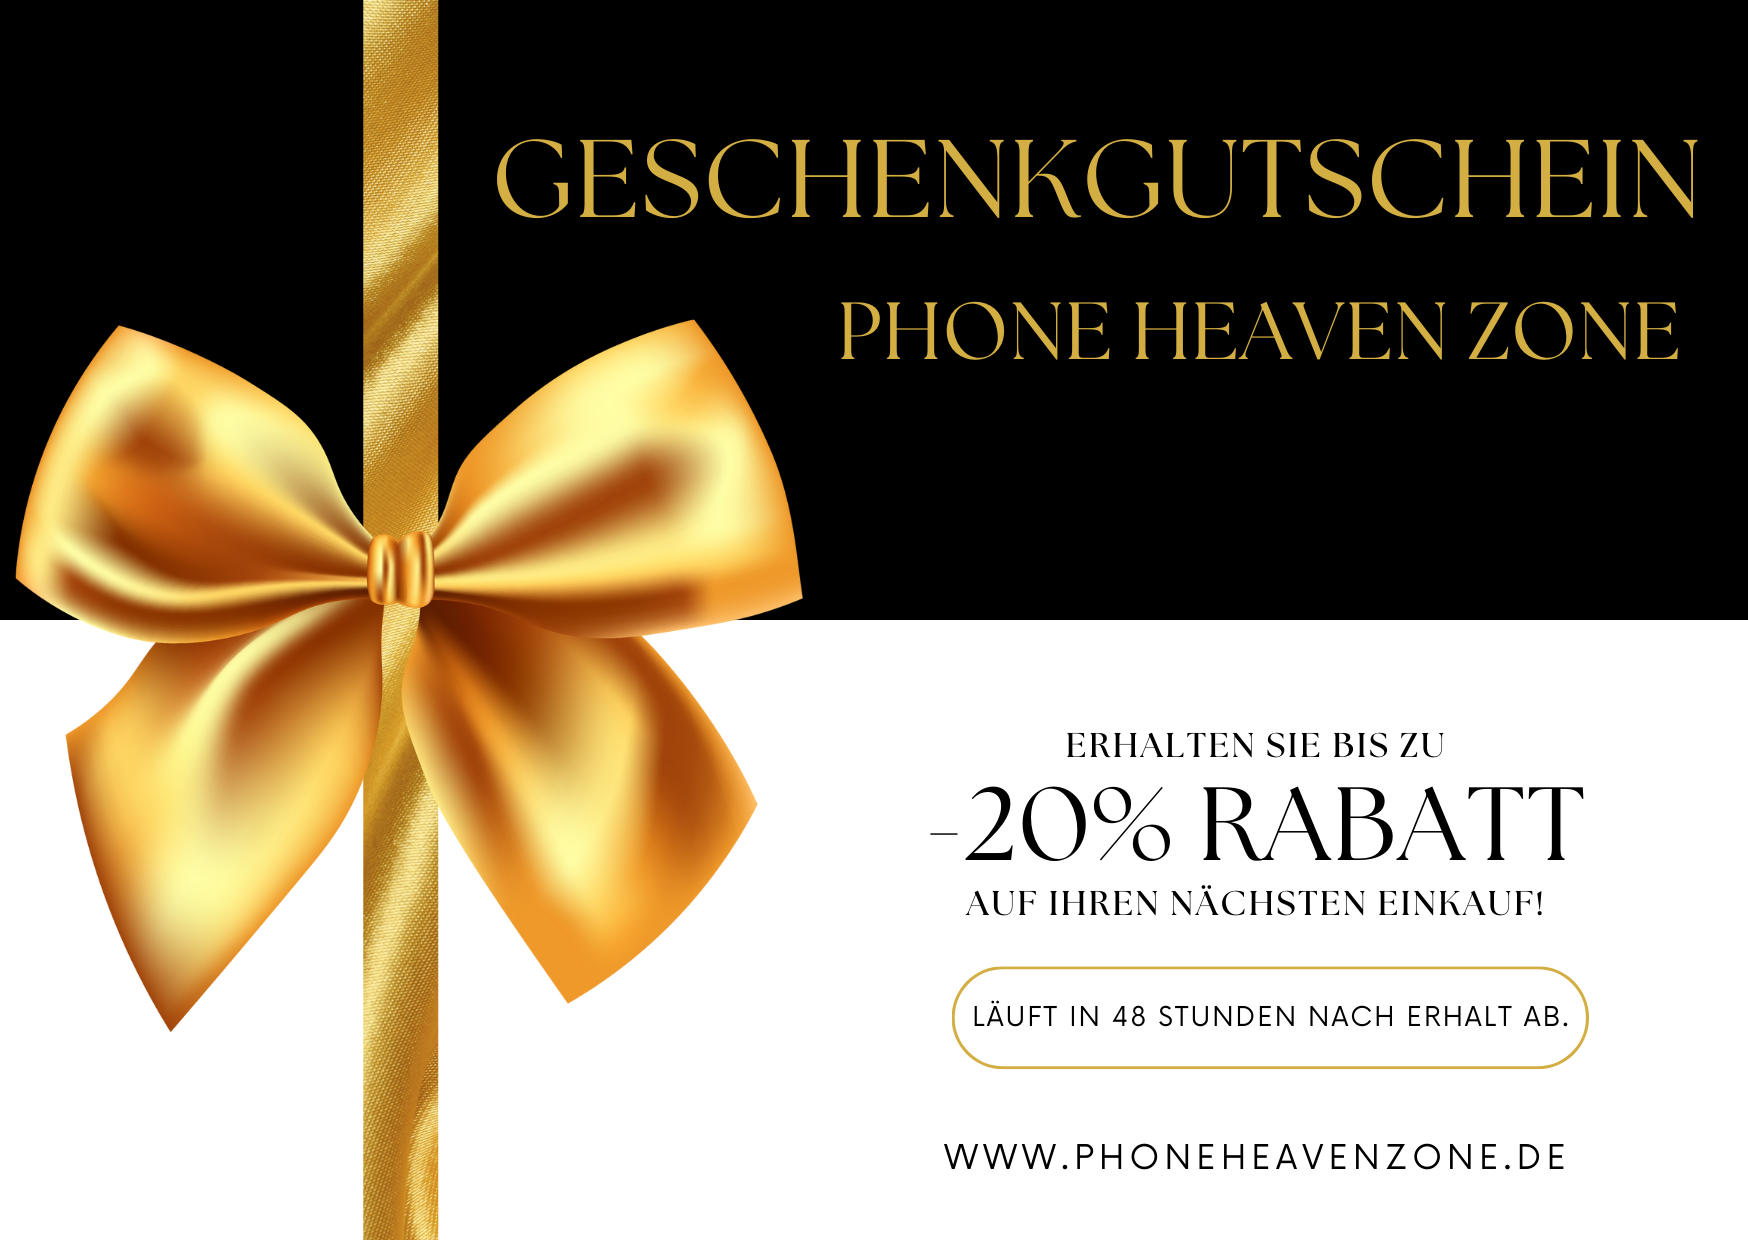 Gutschein für 20% Rabatt bei Phone Heaven Zone - Phone Heaven Zone